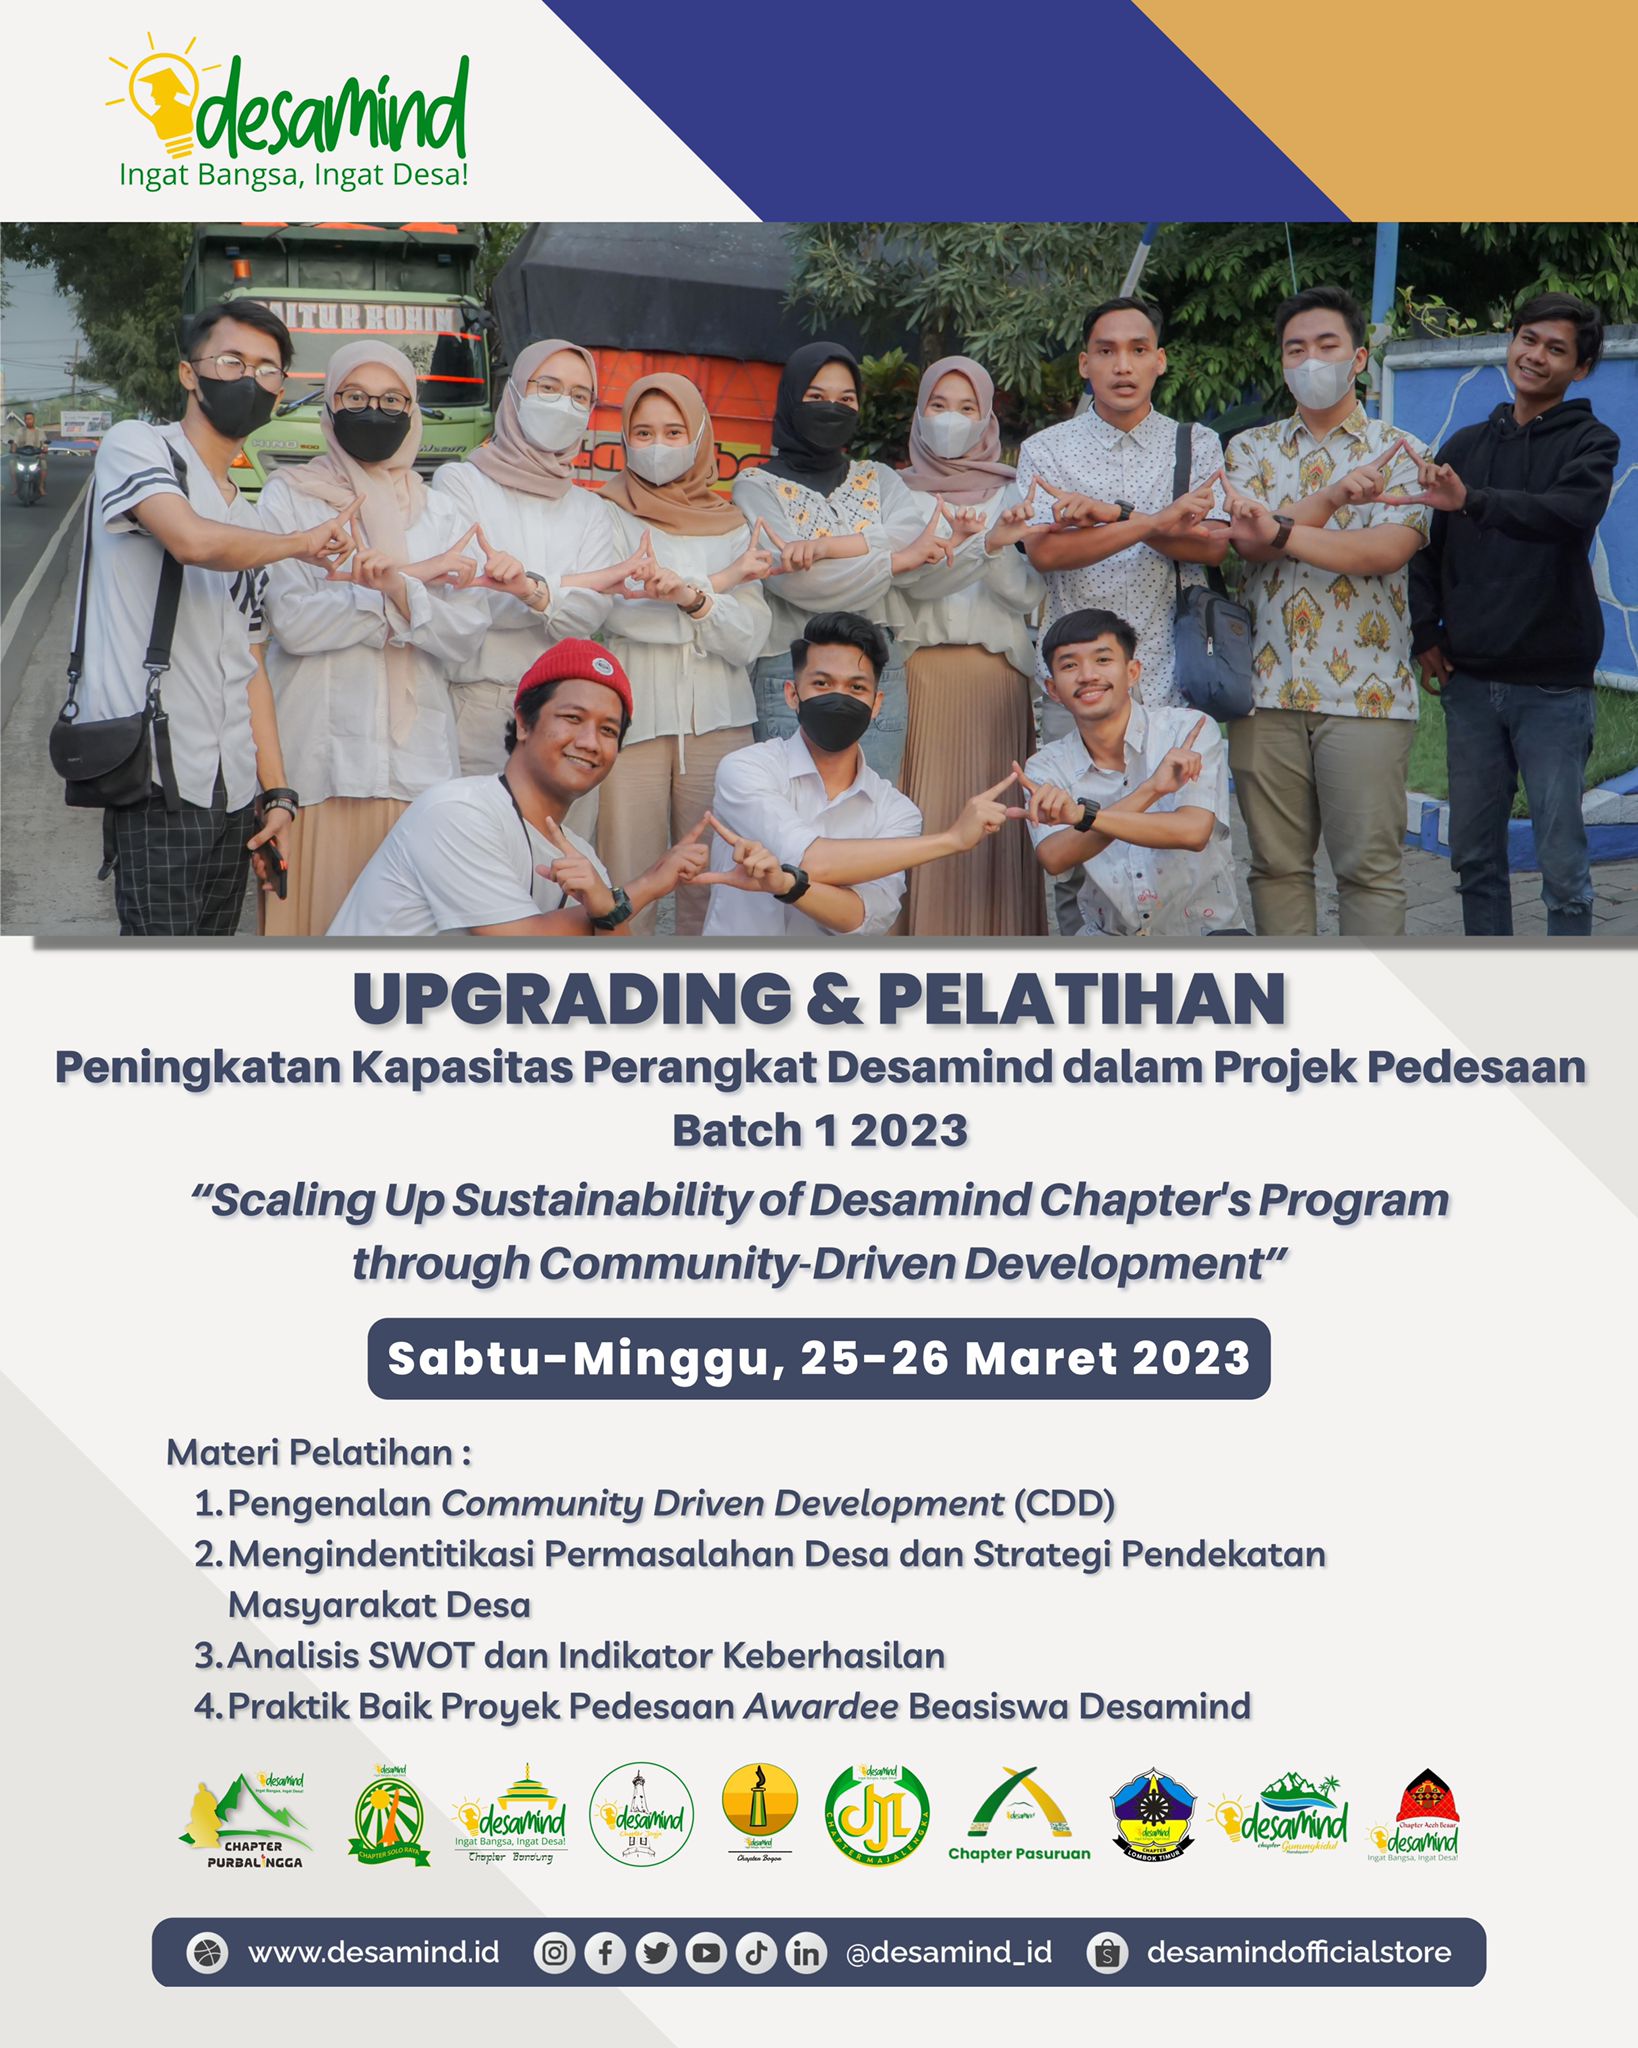 Upgrading & Peningkatan Kapasitas Perangkat Desamind Chapter Seluruh Indonesia dalam Projek Pedesaan Batch 1 2023